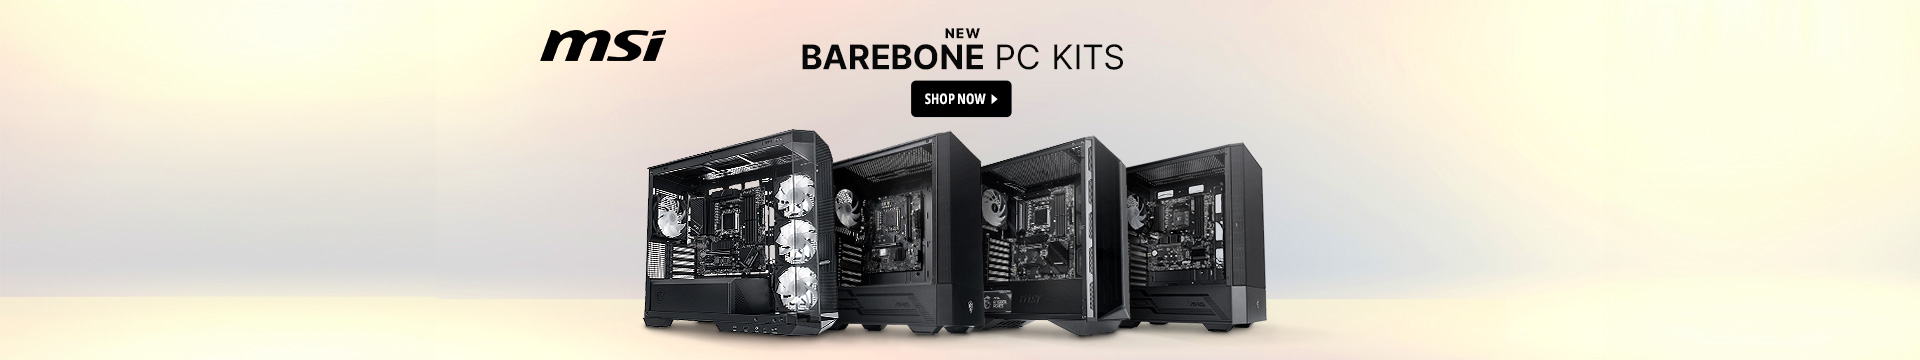 Barebone PC kit